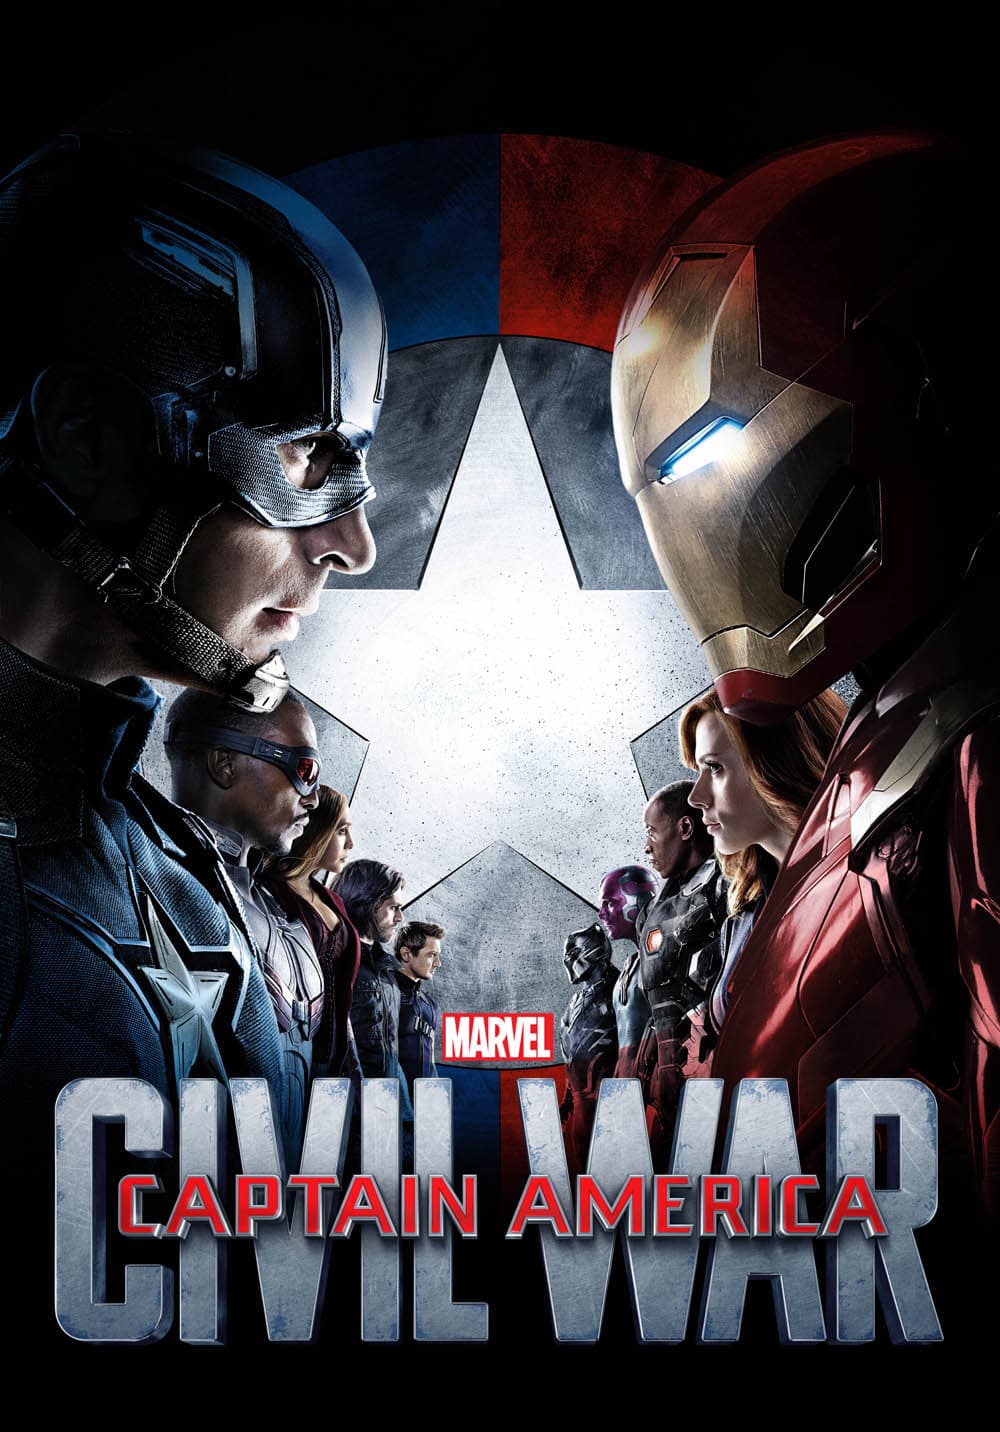 Marvel civil war alternate poster